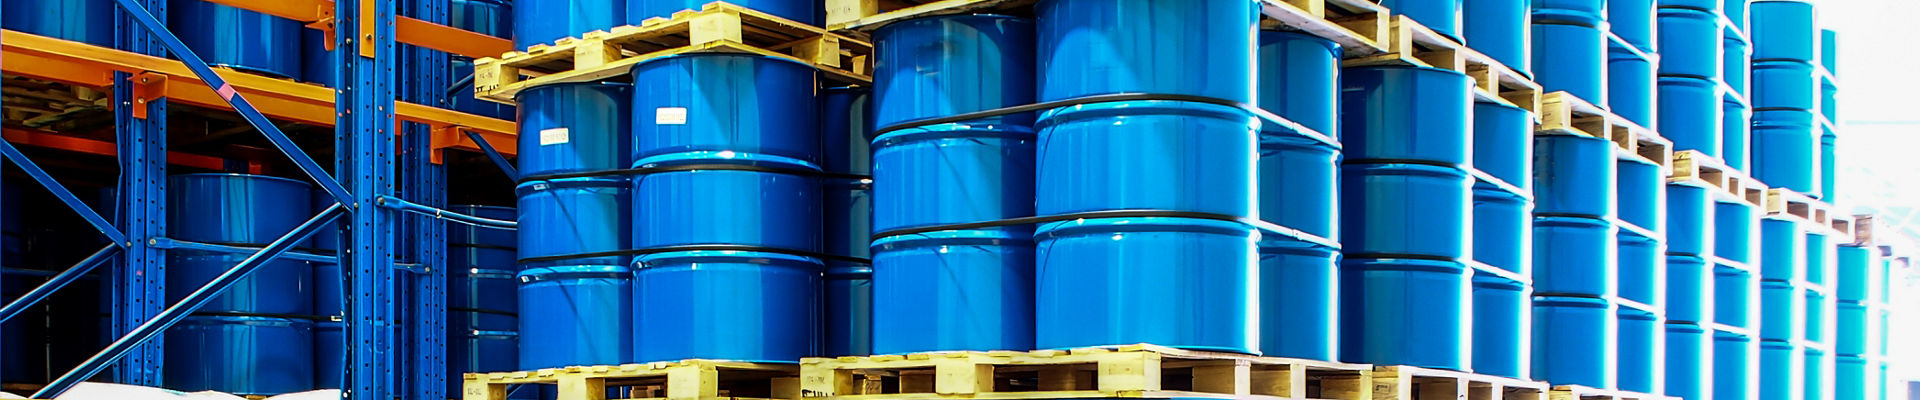 창고 선반의 파란색 산업용 드럼